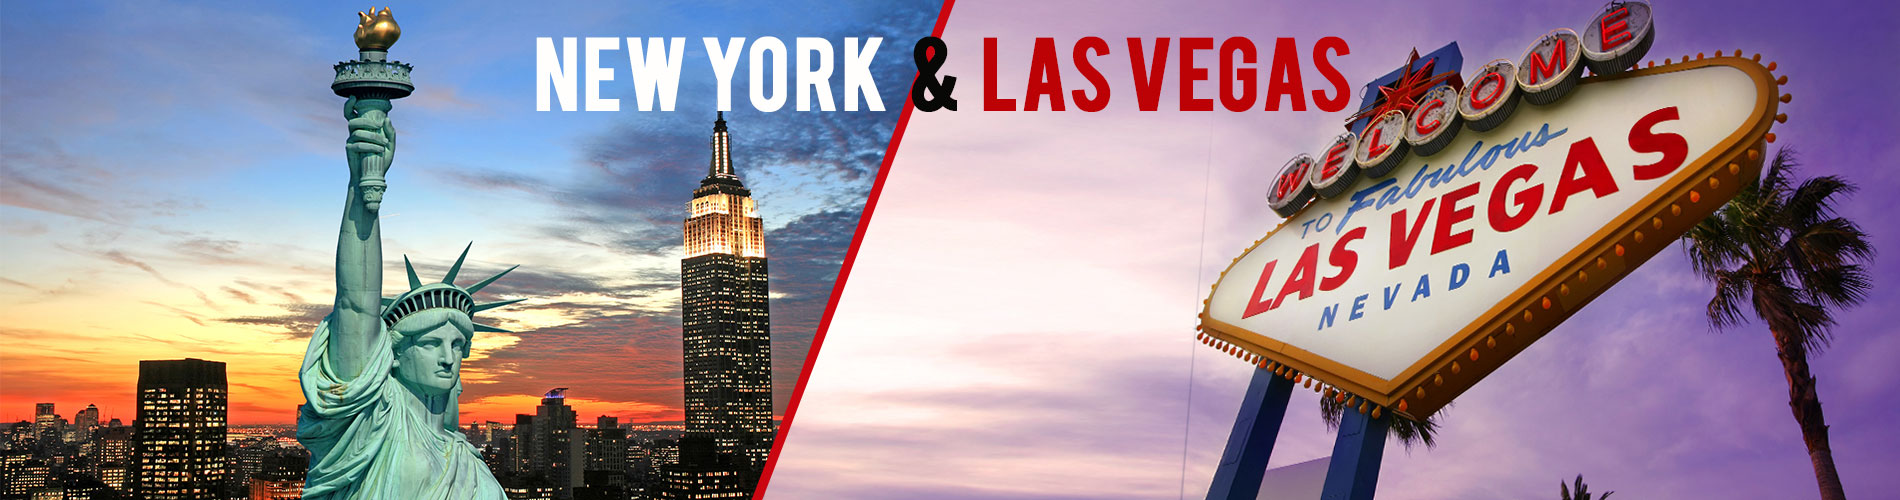 New York & Las Vegas